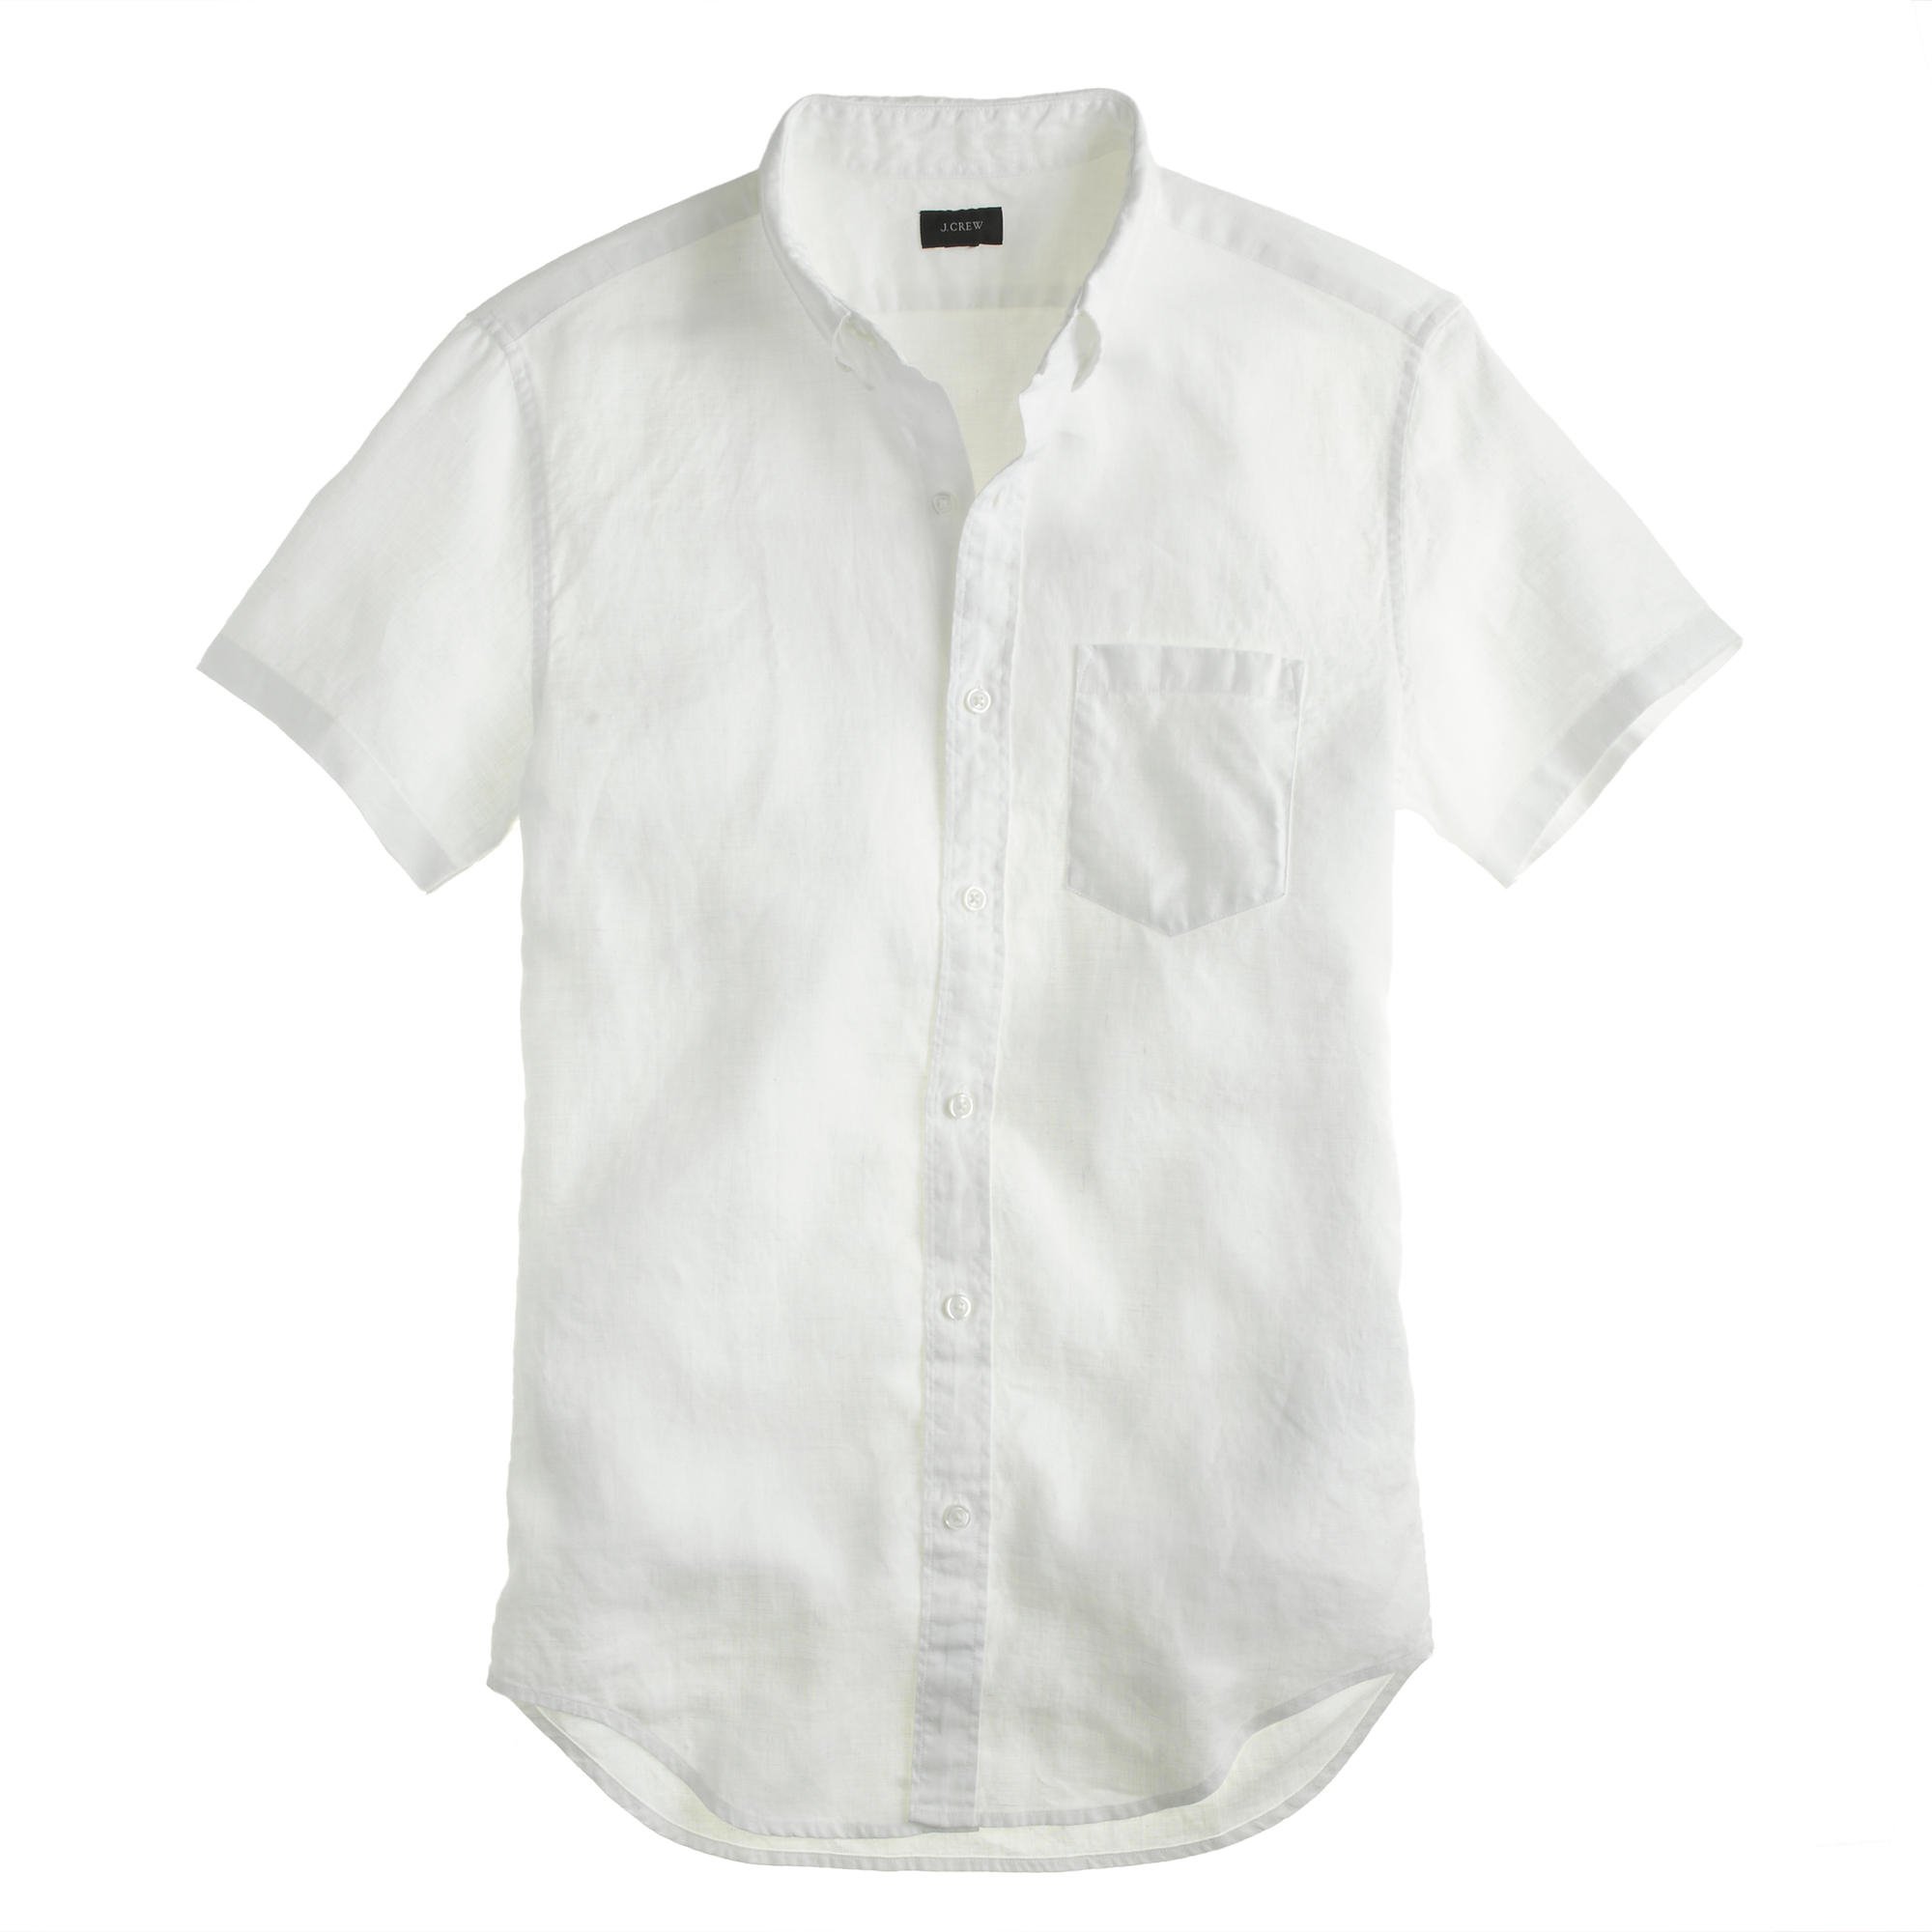 J.crew Short-sleeve Irish Linen Shirt in White for Men - Save 29% | Lyst